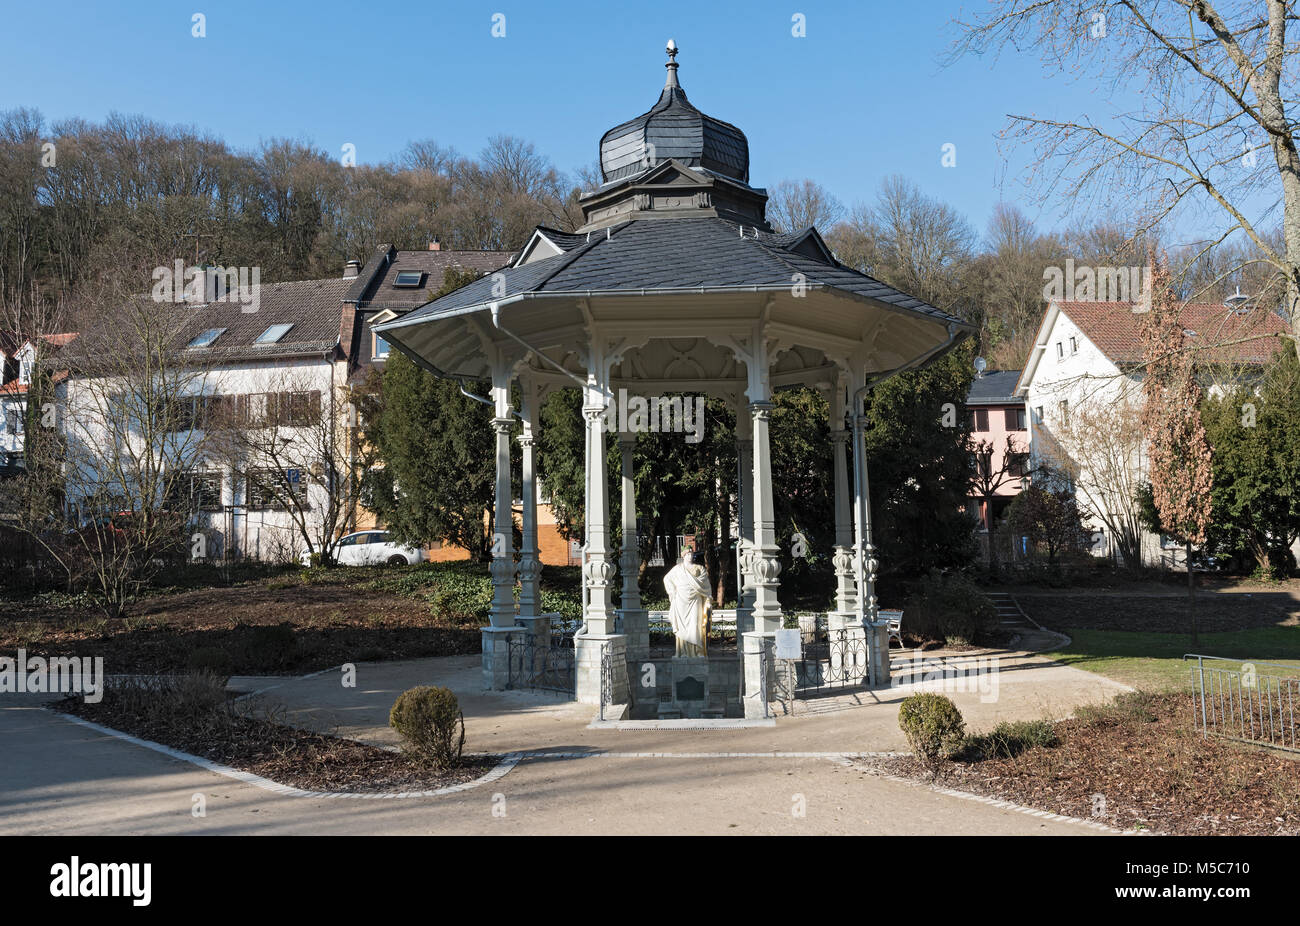 Pavillon avec Sodenia statue dans le Quellenpark de Bad Soden am Taunus, Hesse, Allemagne Banque D'Images